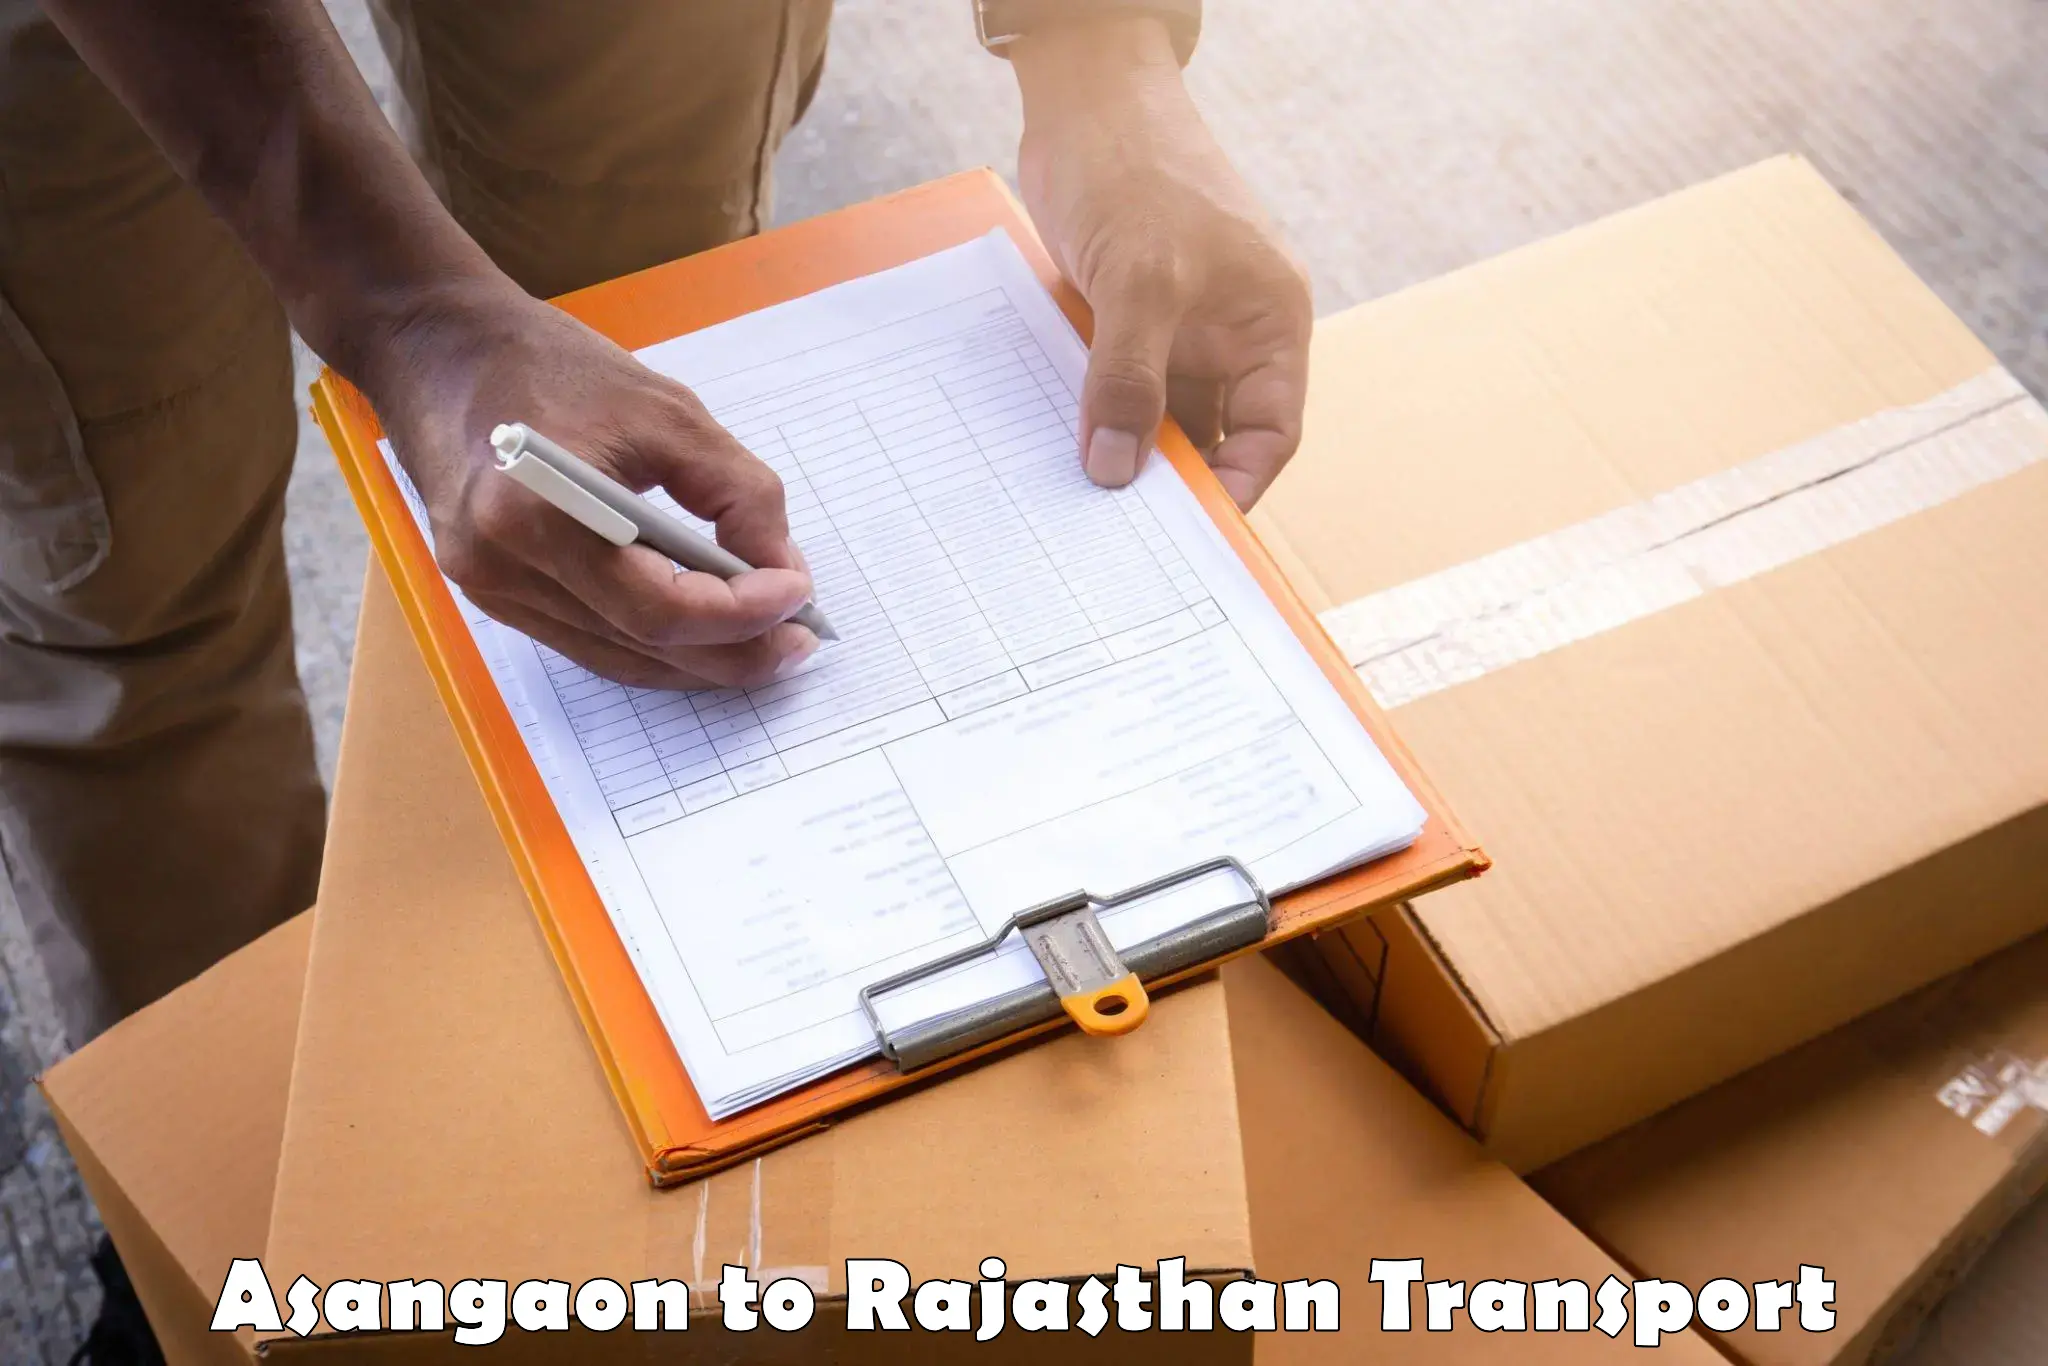 Online transport Asangaon to Rajgarh Rajasthan